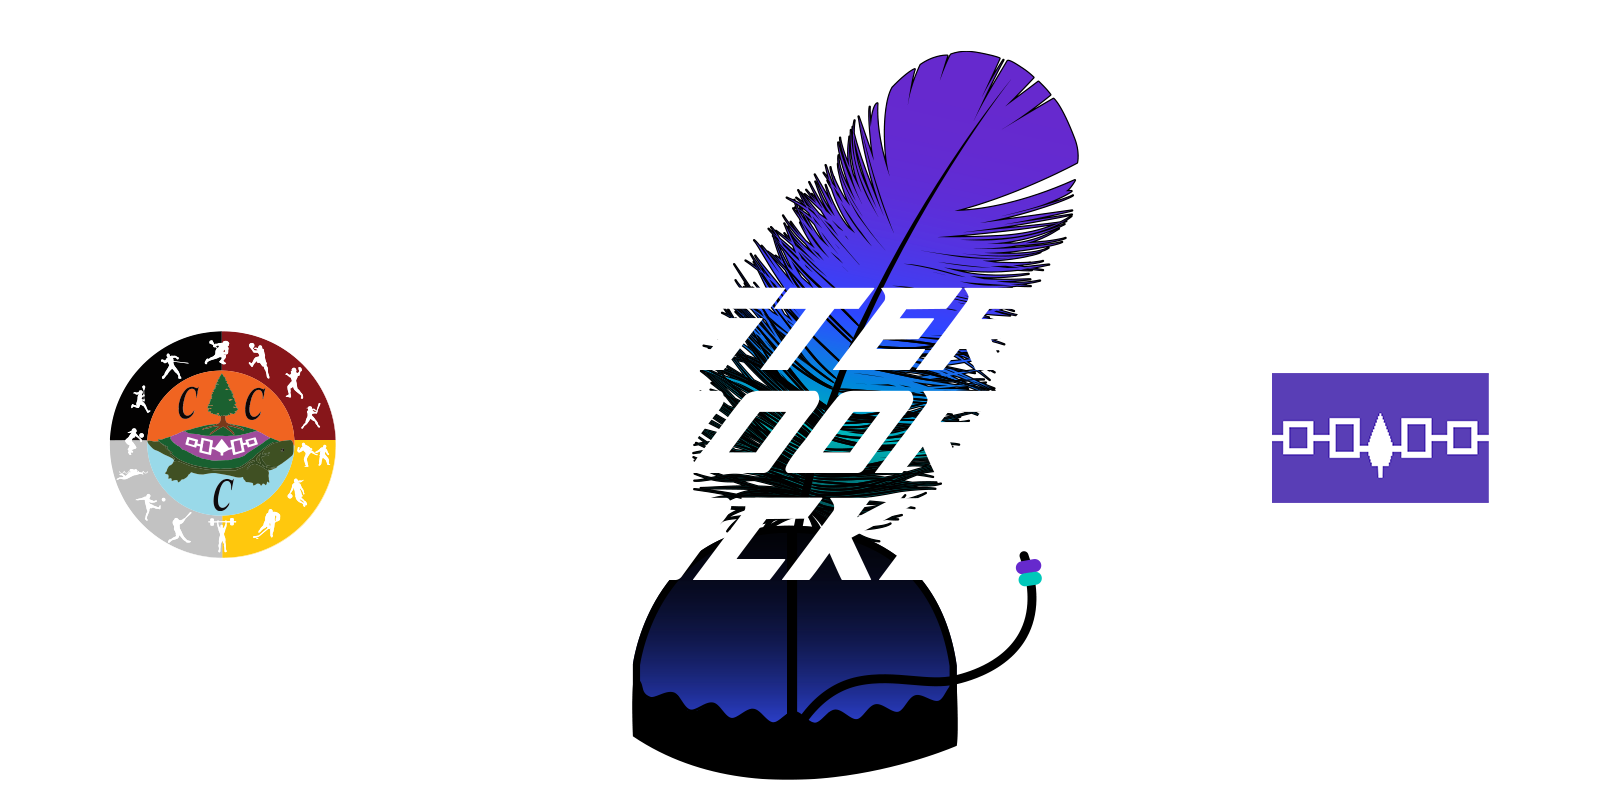 Western Door Hockey